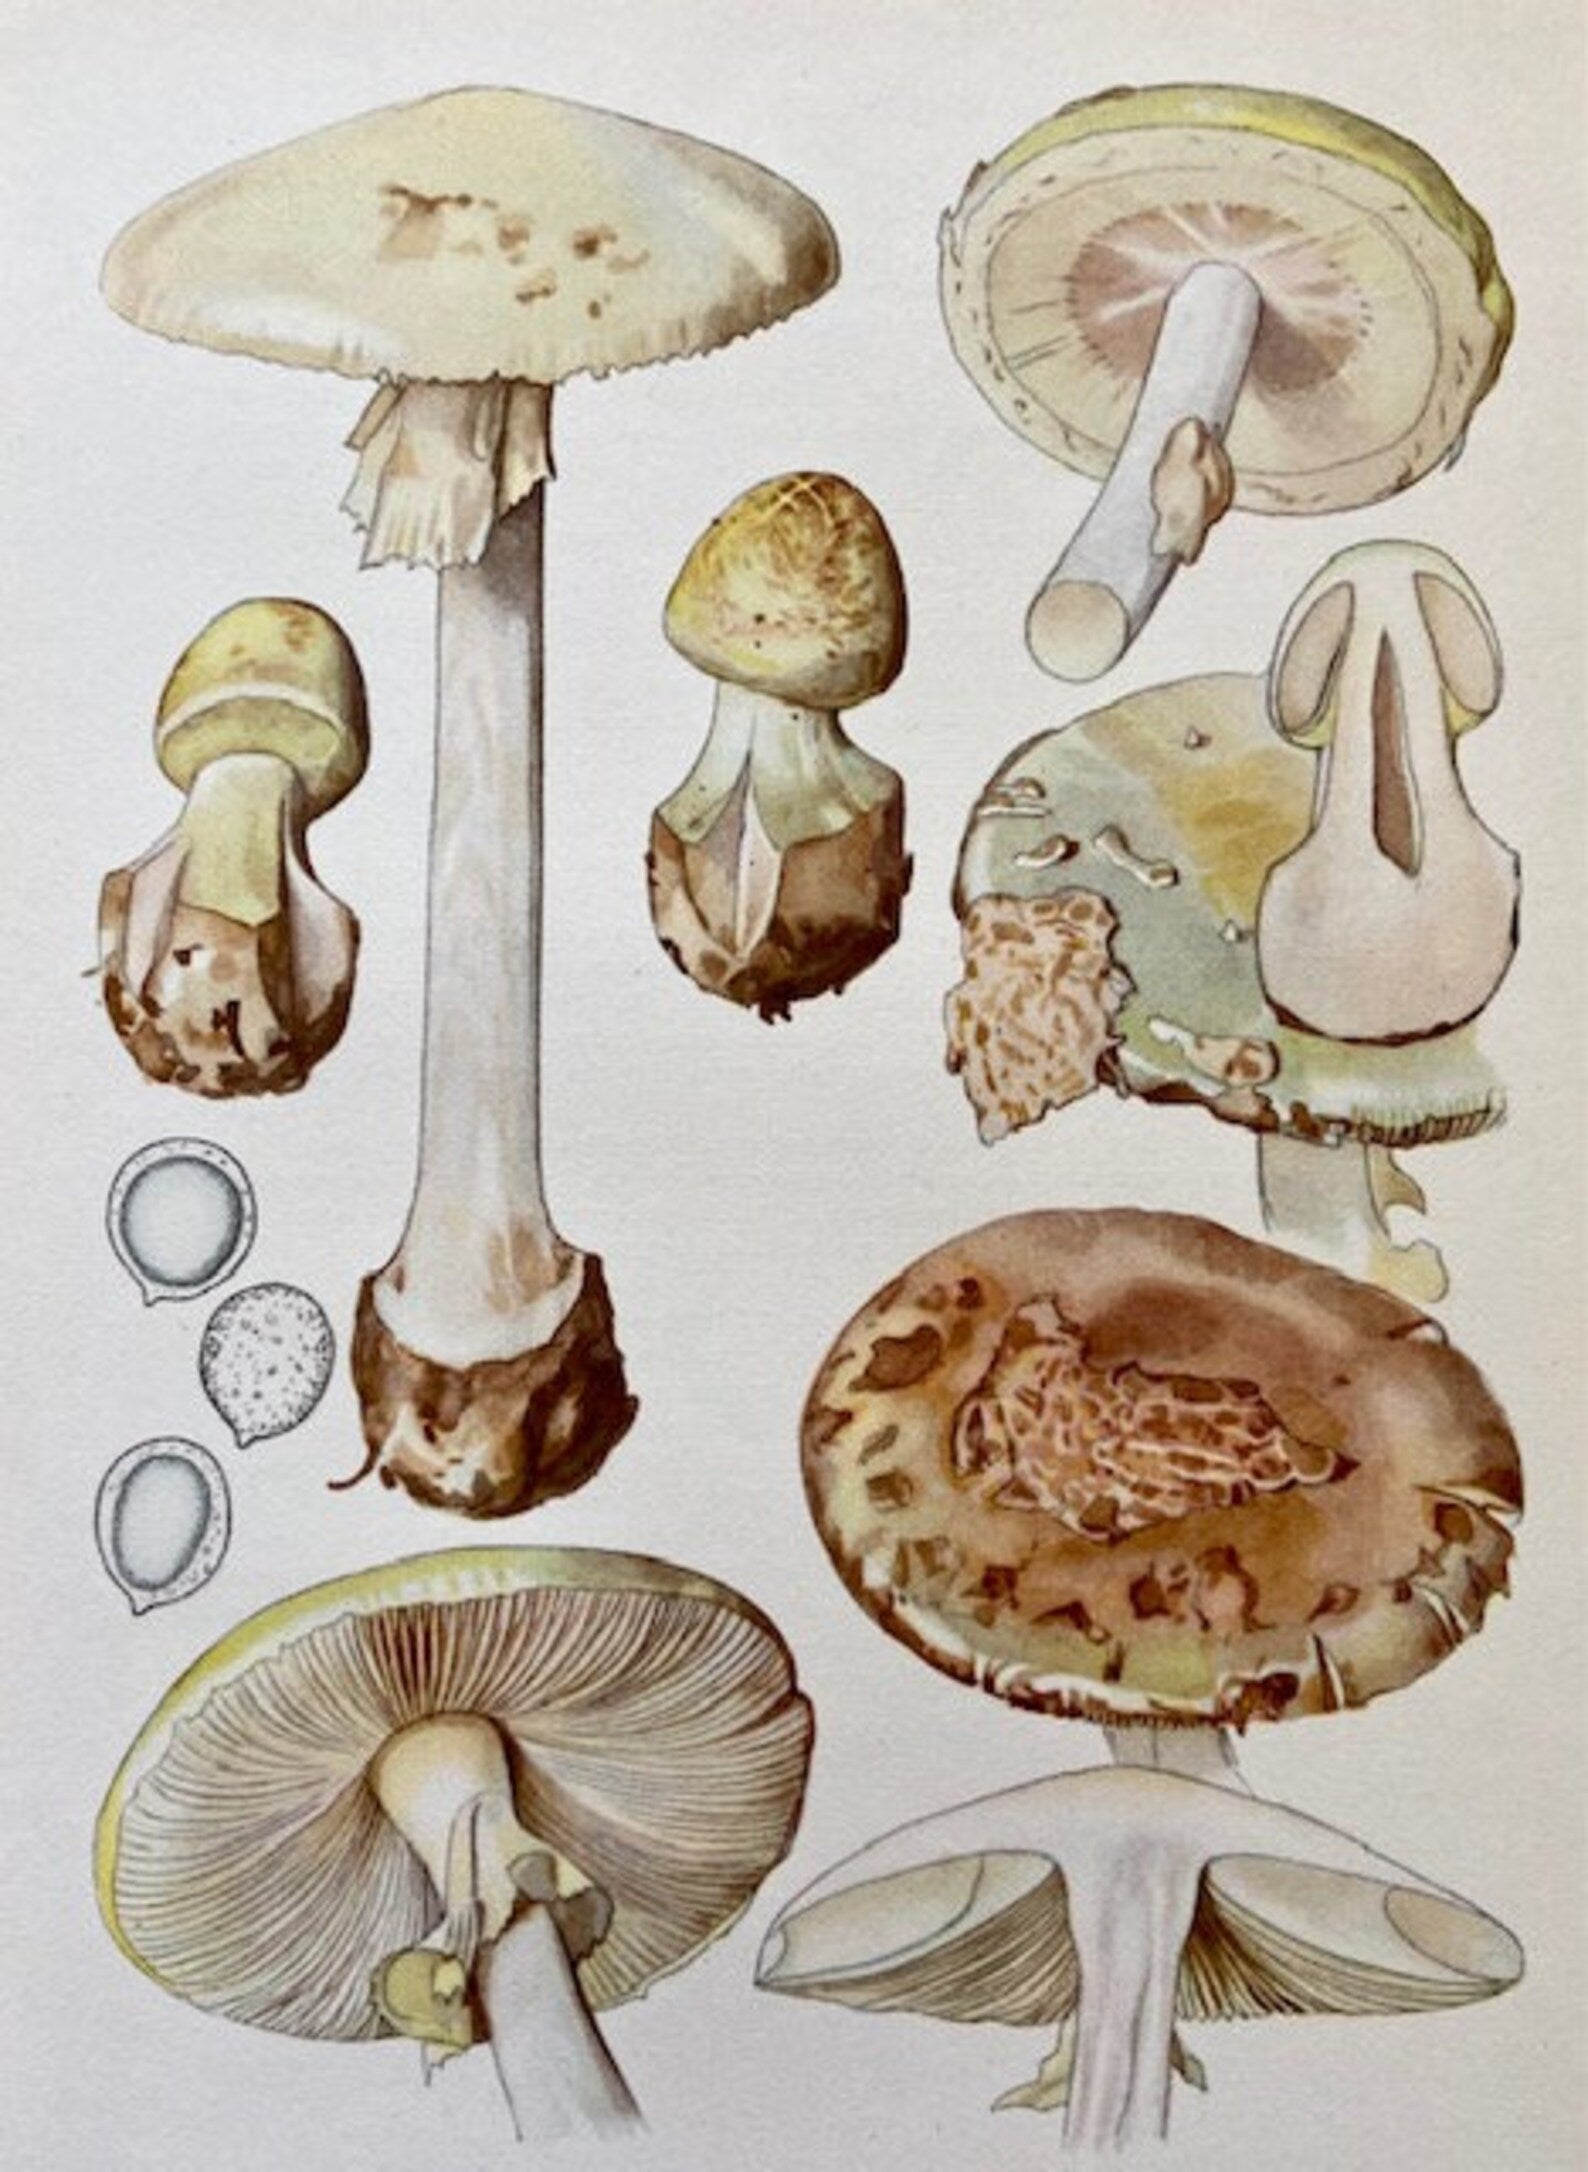 Vintage Mushroom, Original Art, Fungi Book Plate, Woodland Prints, Autumnal Print, Fungi Art, Wall Art, Sustainable Art, Nature Prints (C))